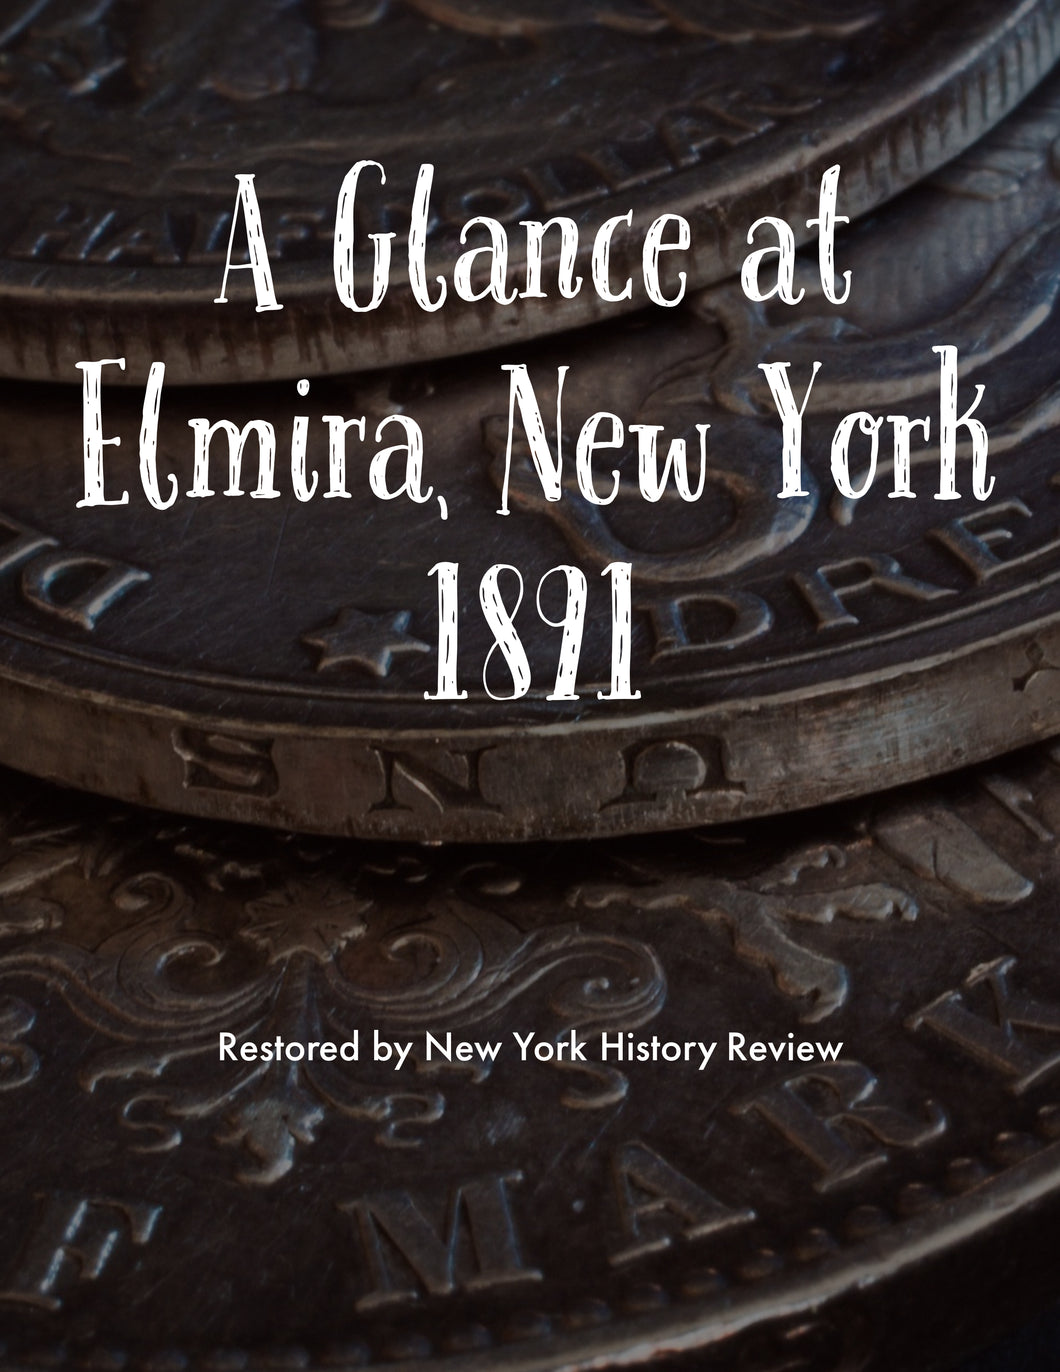 A Glance at Elmira, New York 1891